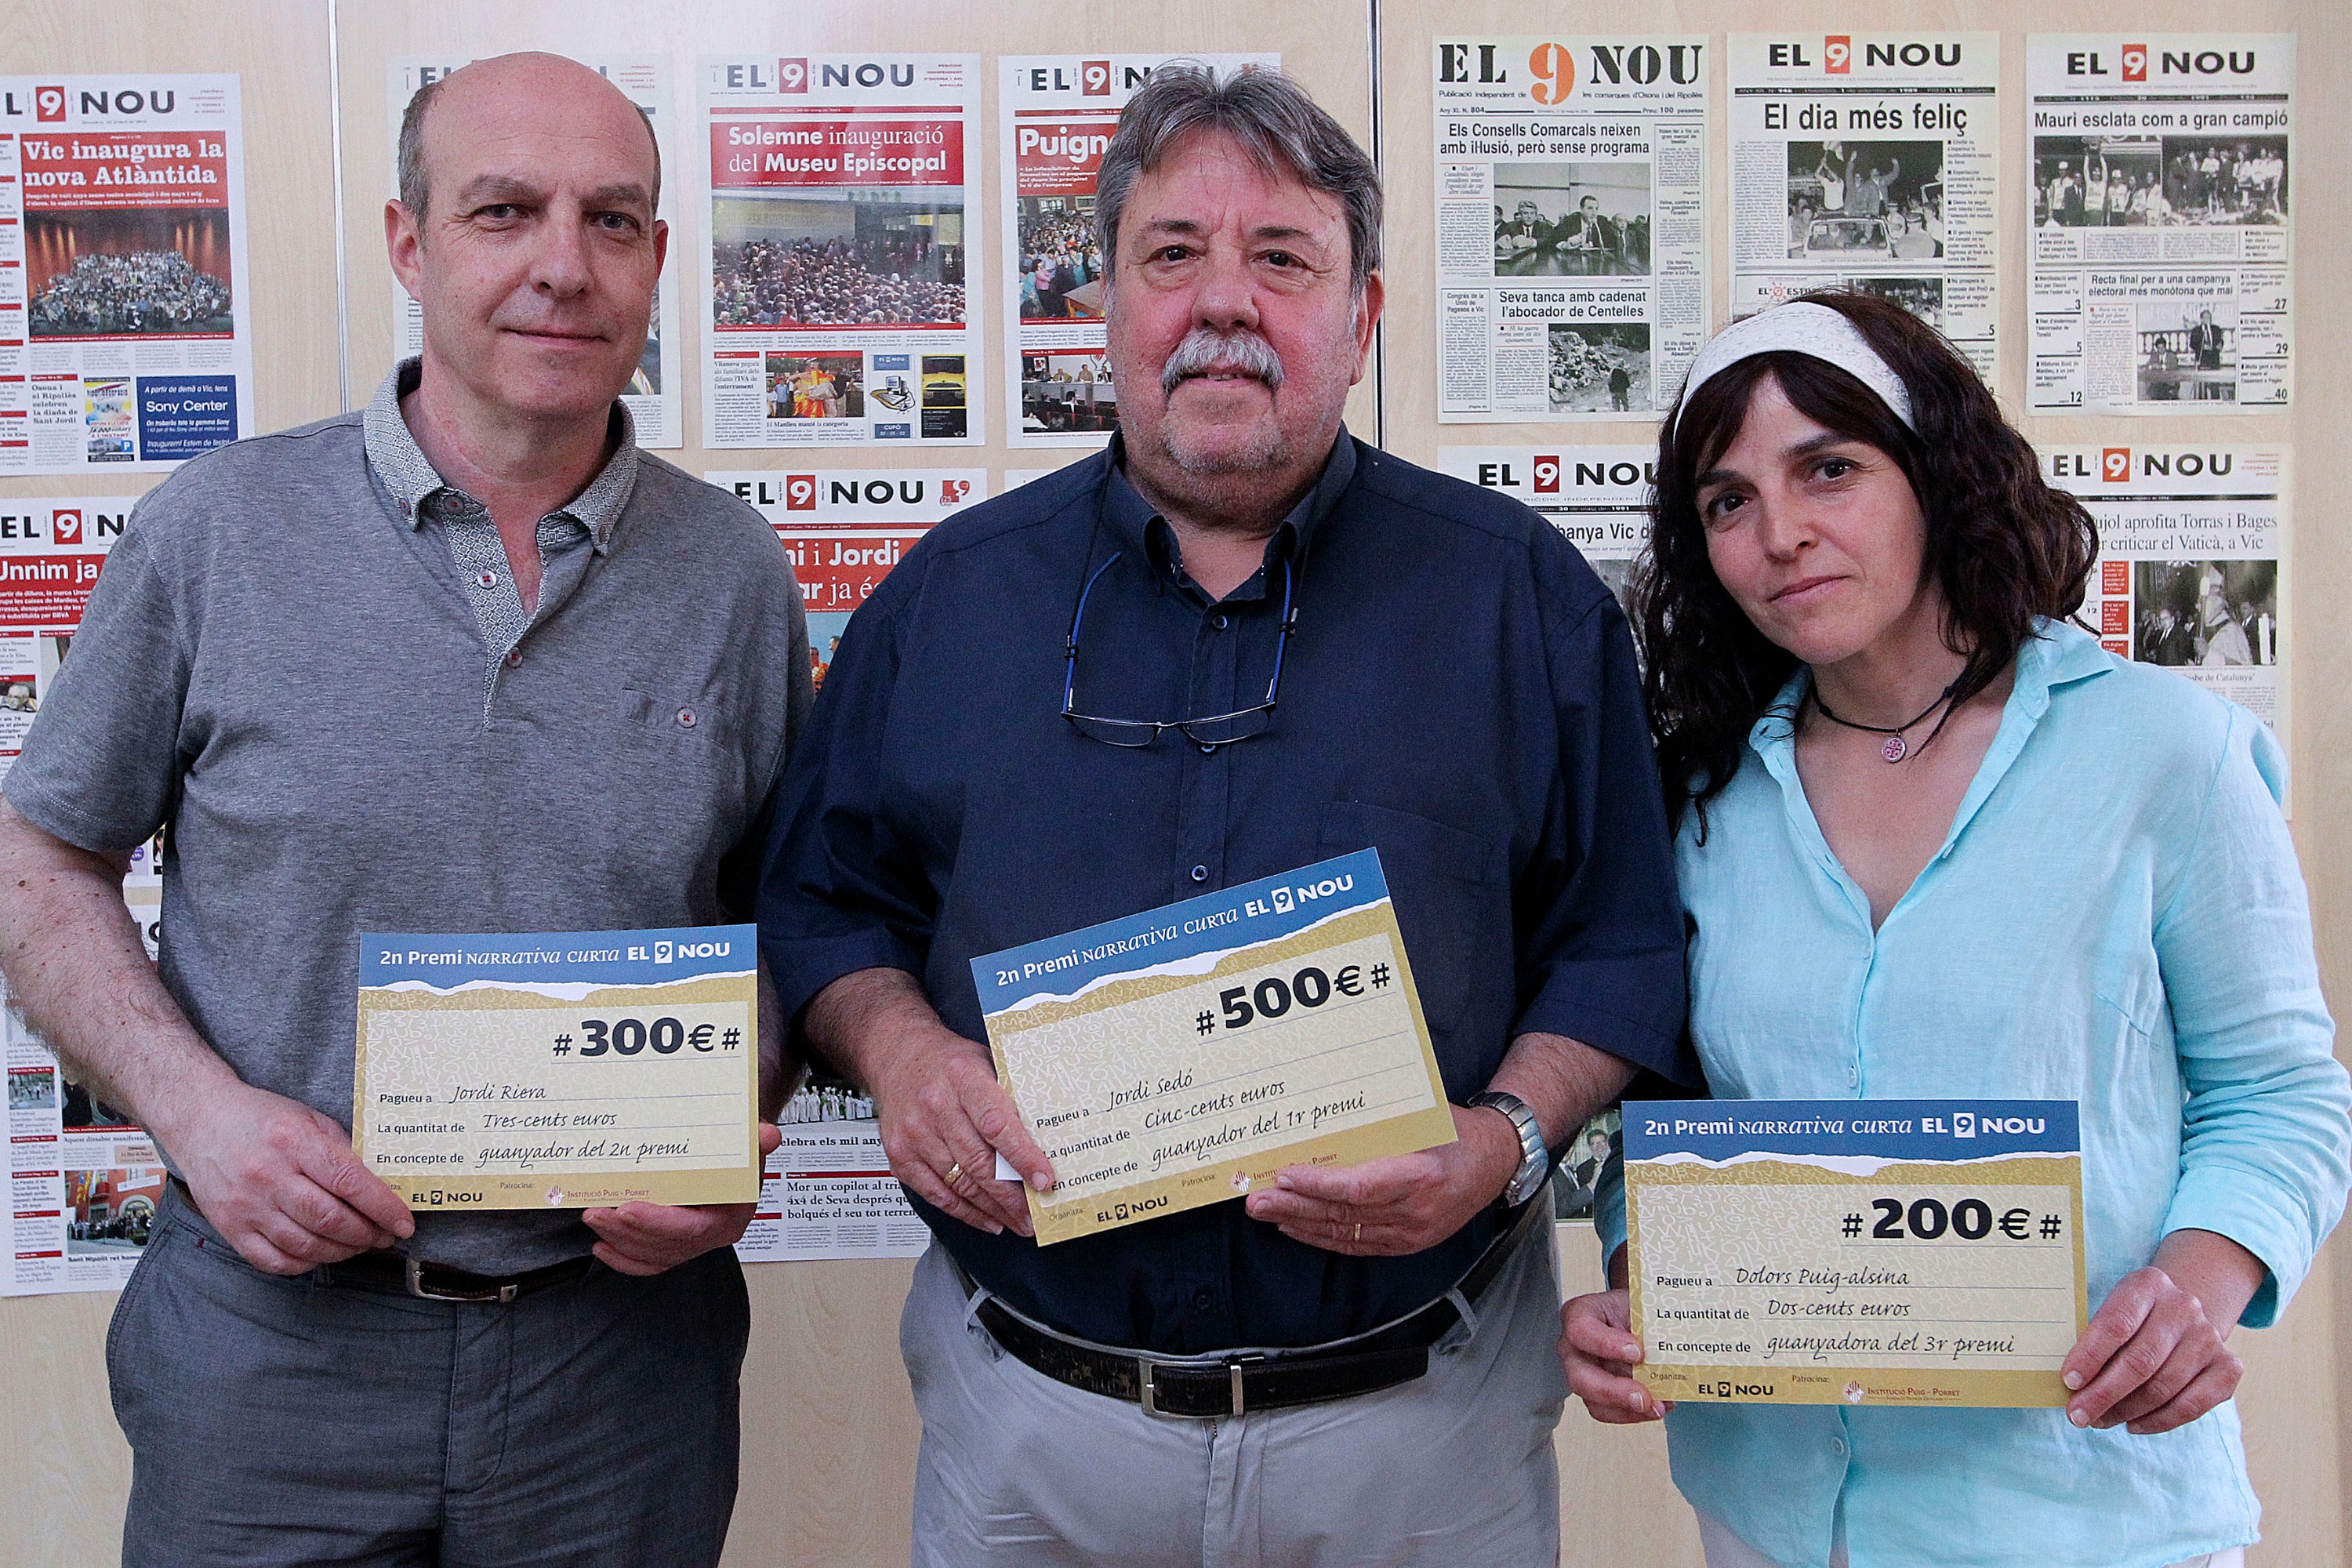 Jordi Sedó, el guanyador, al mig. A l’esquerra, Jordi Riera (segon premi) i a la dreta, Dolors Puig-Alsina (tercer premi)